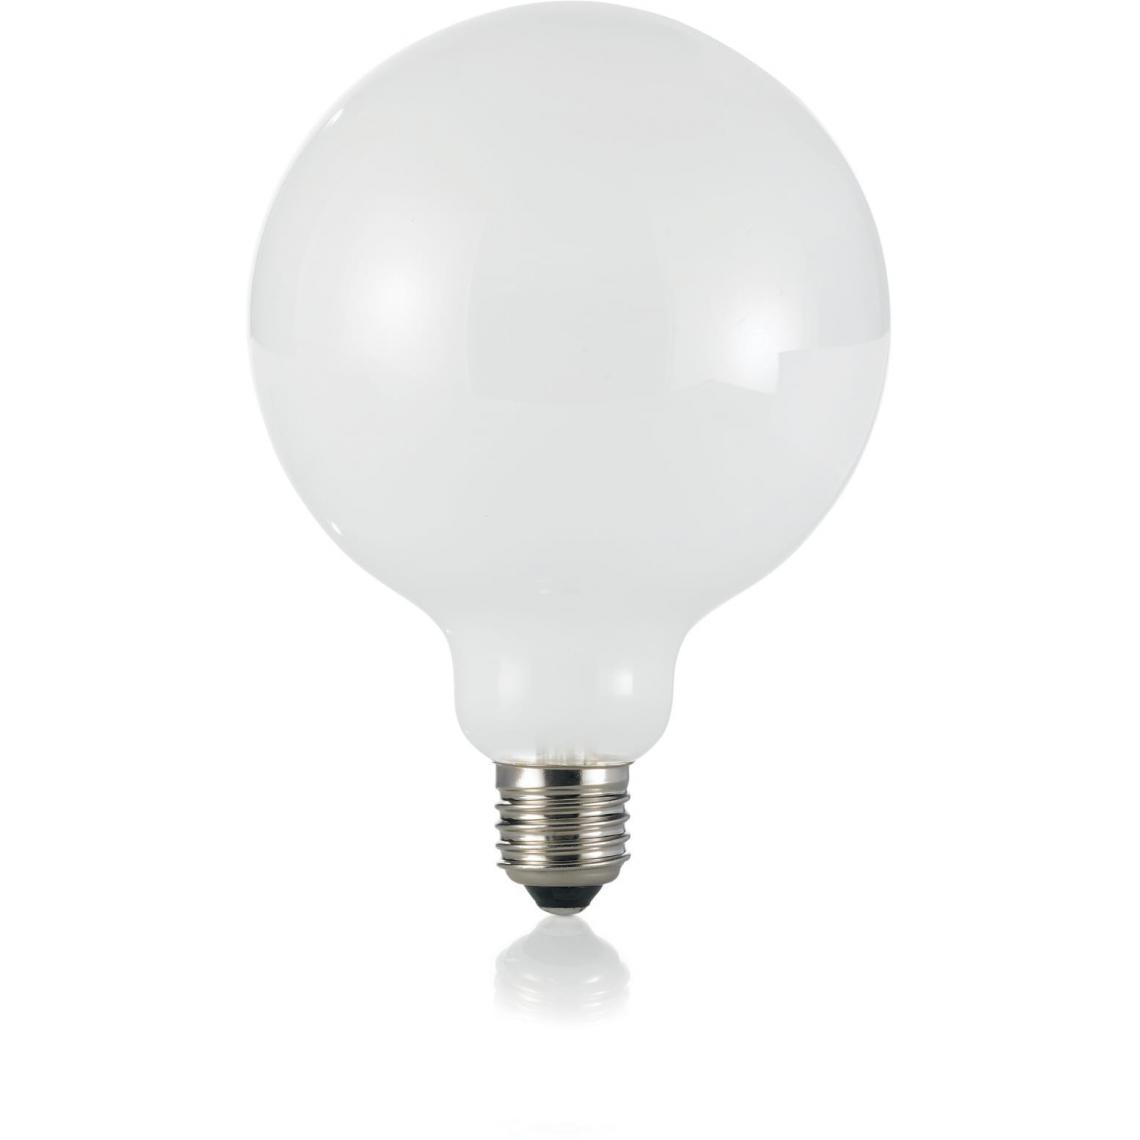 Ideal Lux - AMPOULES IDEAL LUX LEDCLA-101354-E27-8W - Ampoules LED